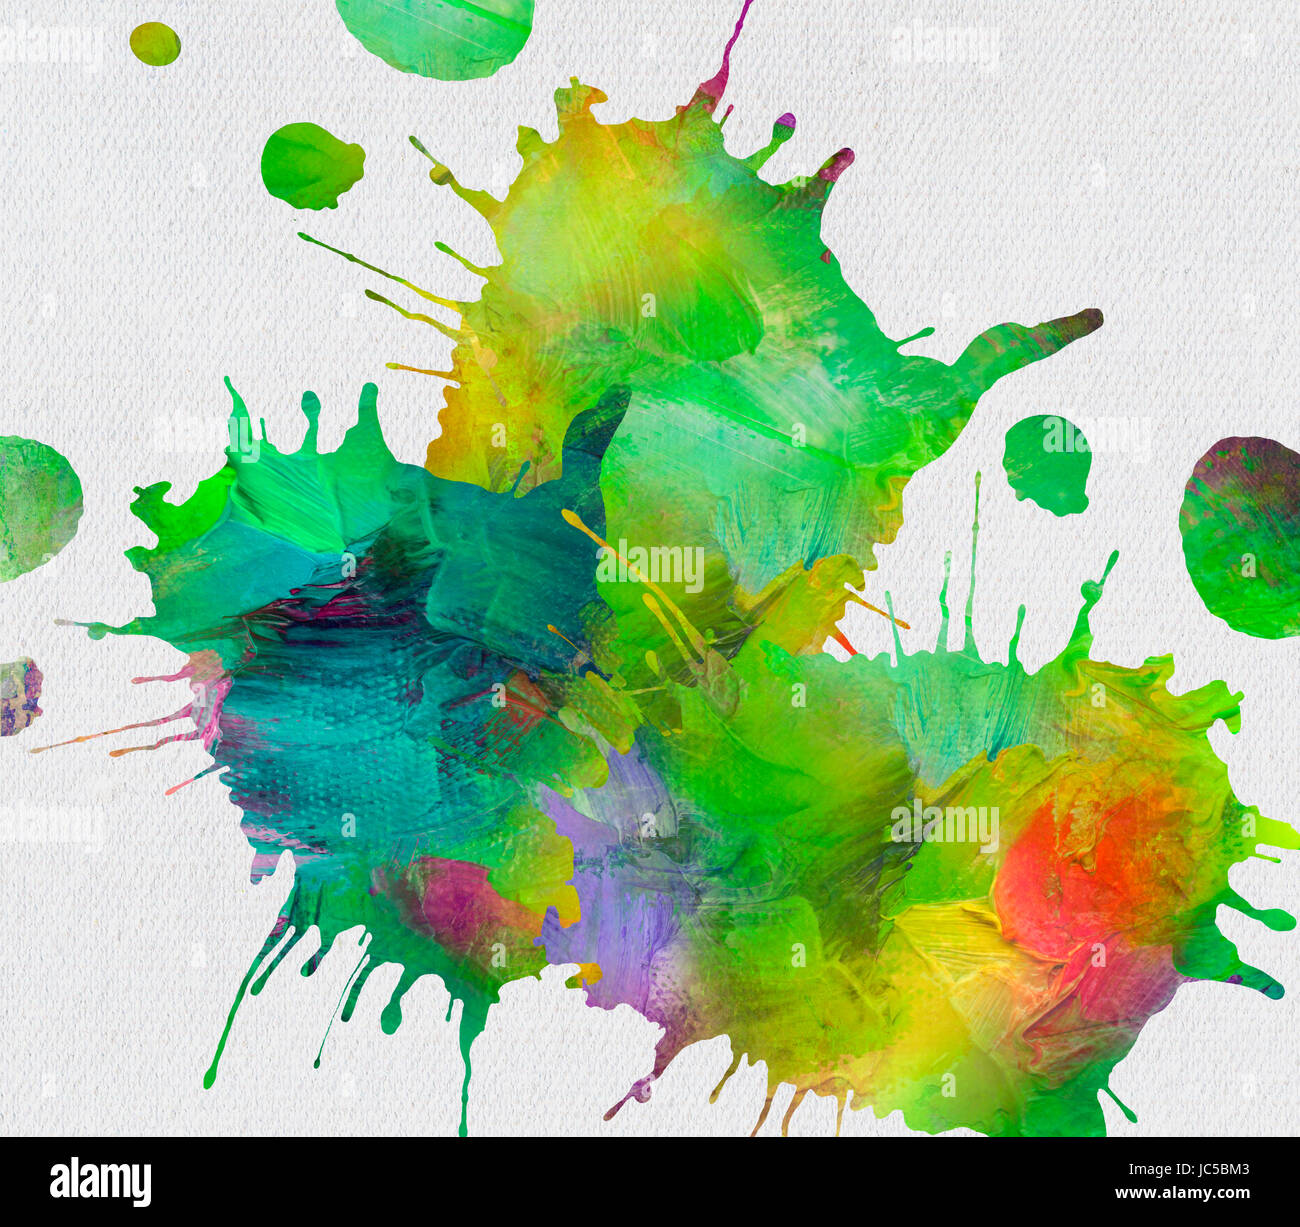 kleckse und farben collagiert auf weißer leinwand Stock Photo - Alamy